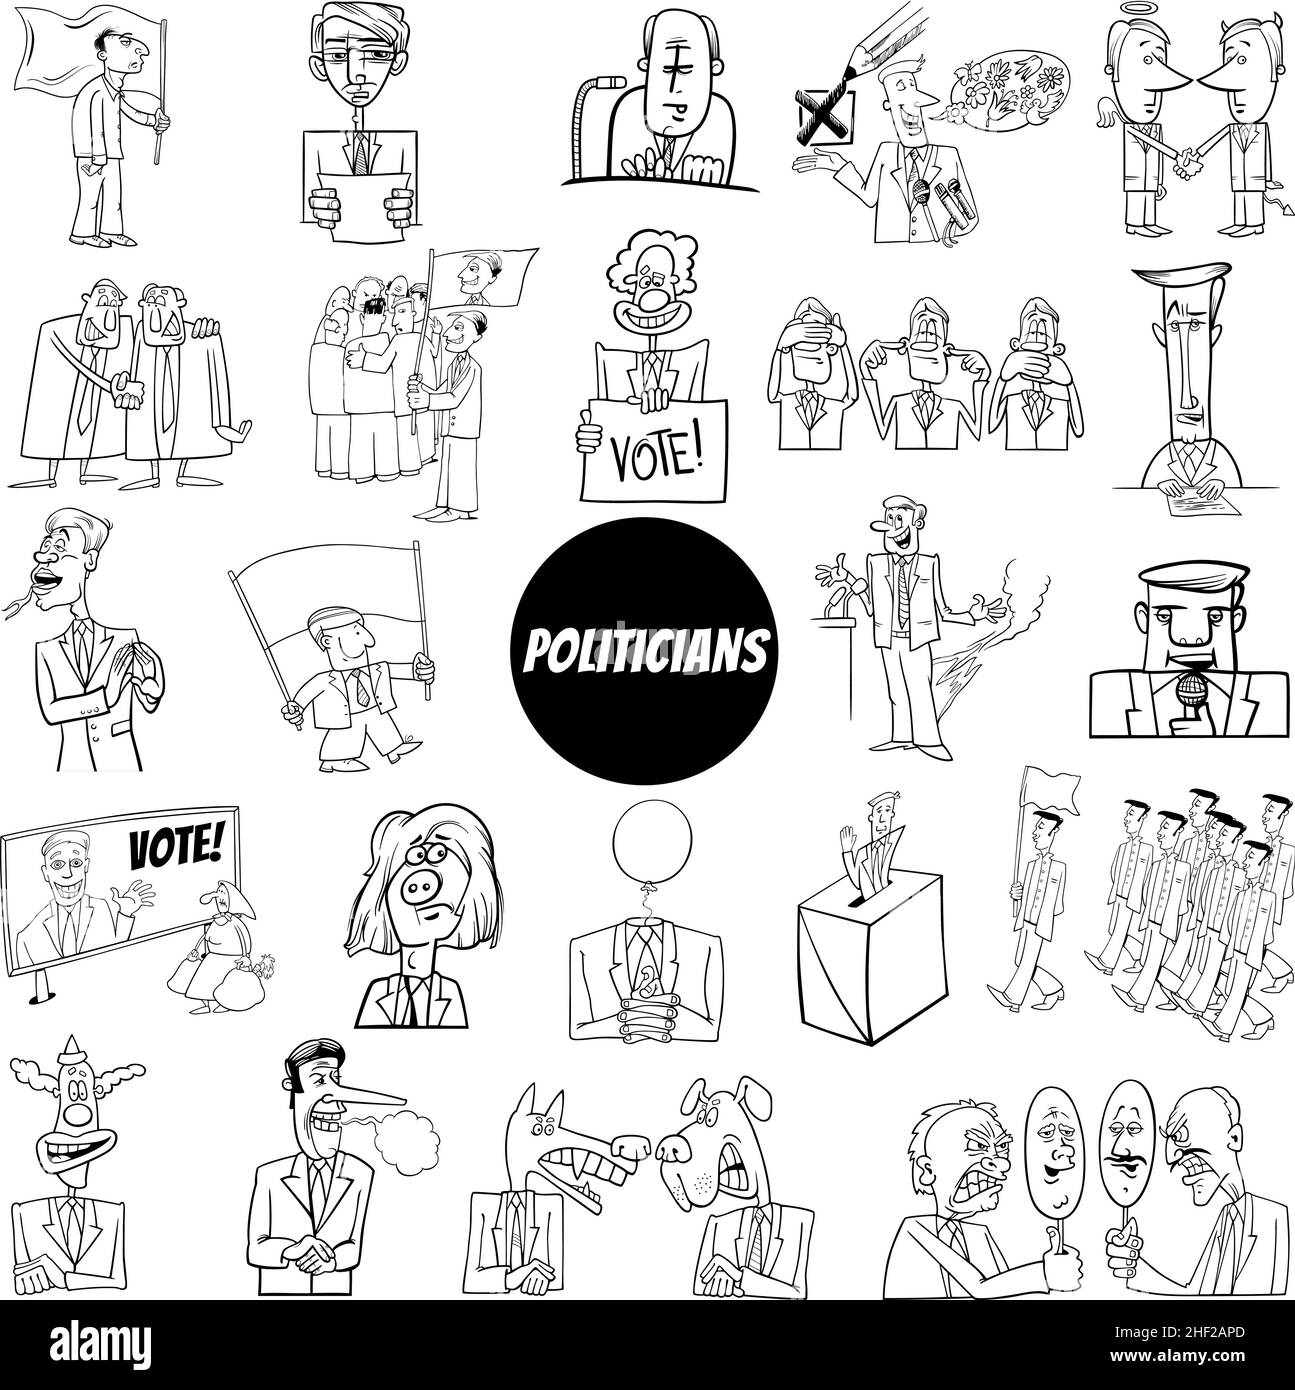 Schwarz-Weiß-Illustration von Politikern Charaktere und konzeptionelle Cartoons setzen Malseite Stock Vektor